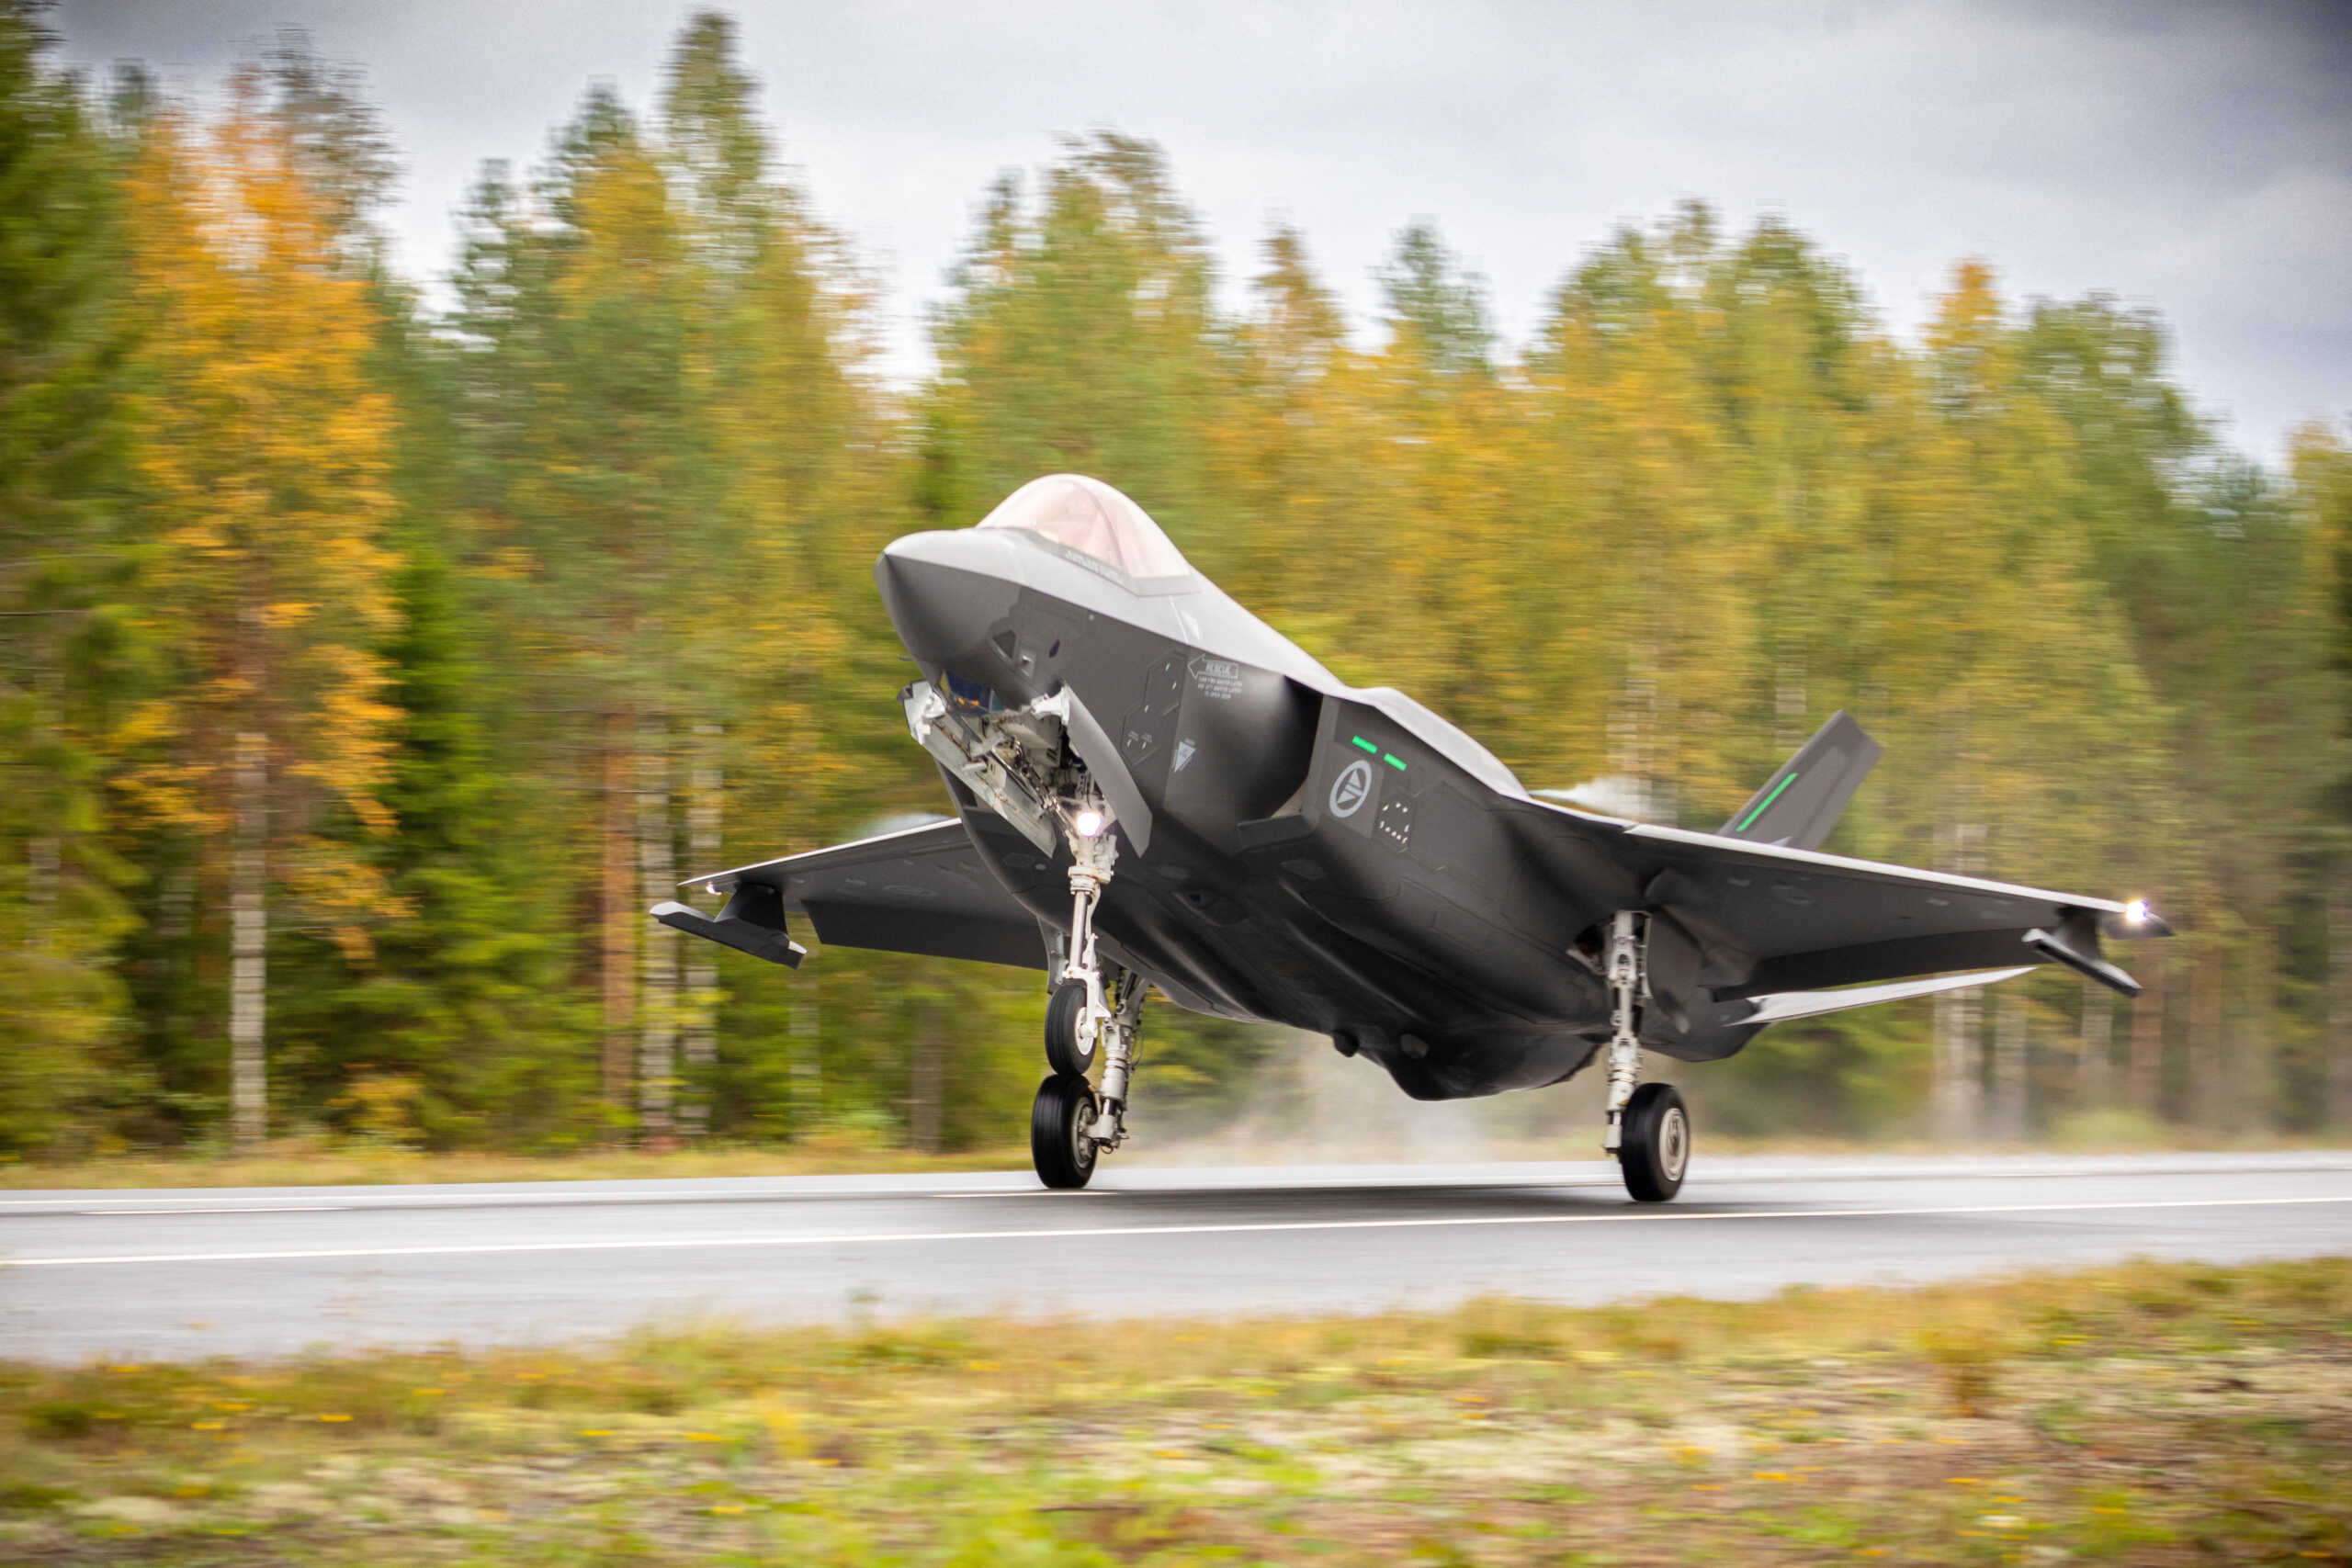 Νορβηγία: Δύο μαχητικά F-35A προσγειώθηκαν σε αυτοκινητόδρομο για ανεφοδιασμό – Ήταν στο πλαίσιο άσκησης